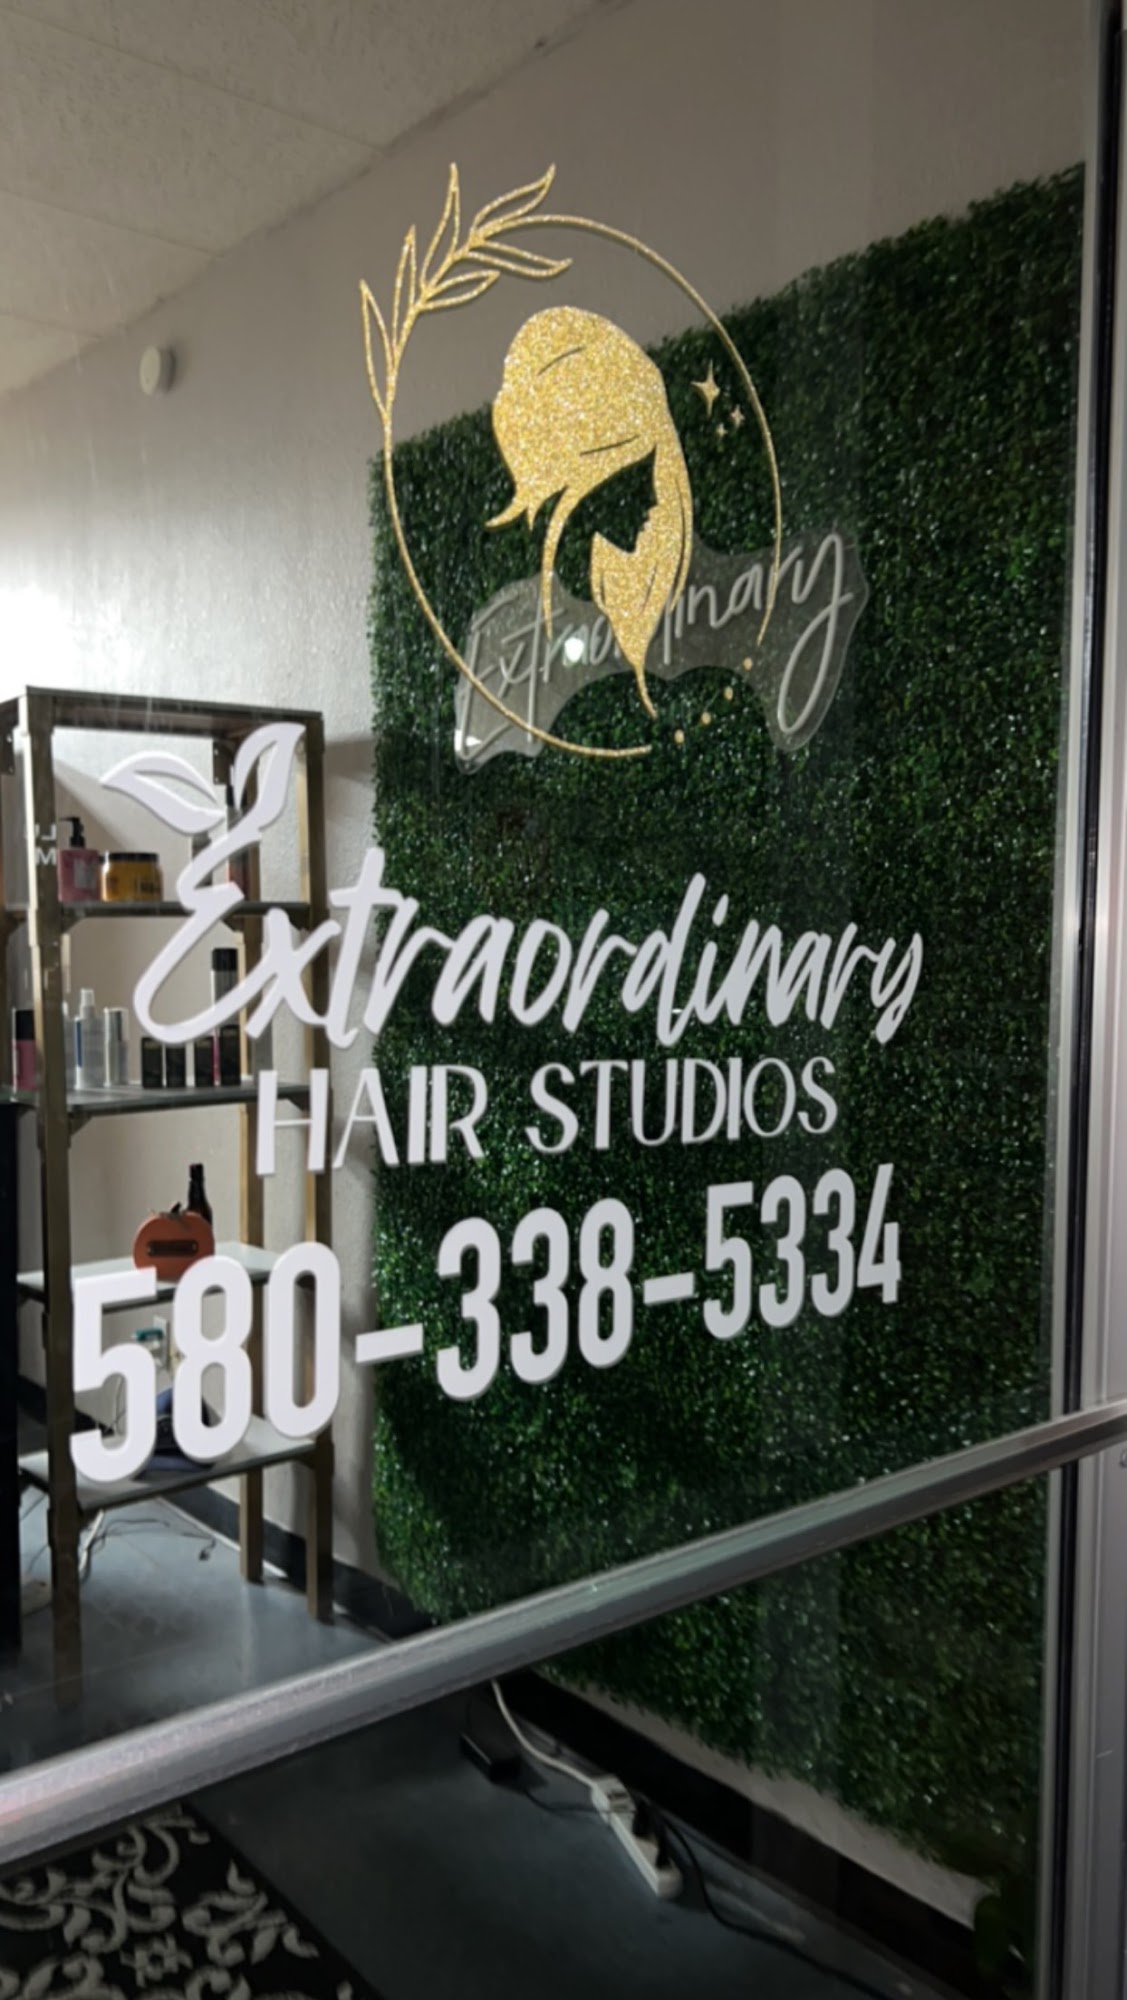 Extraordinary Hair Studios 1322 N Main St, Guymon Oklahoma 73942